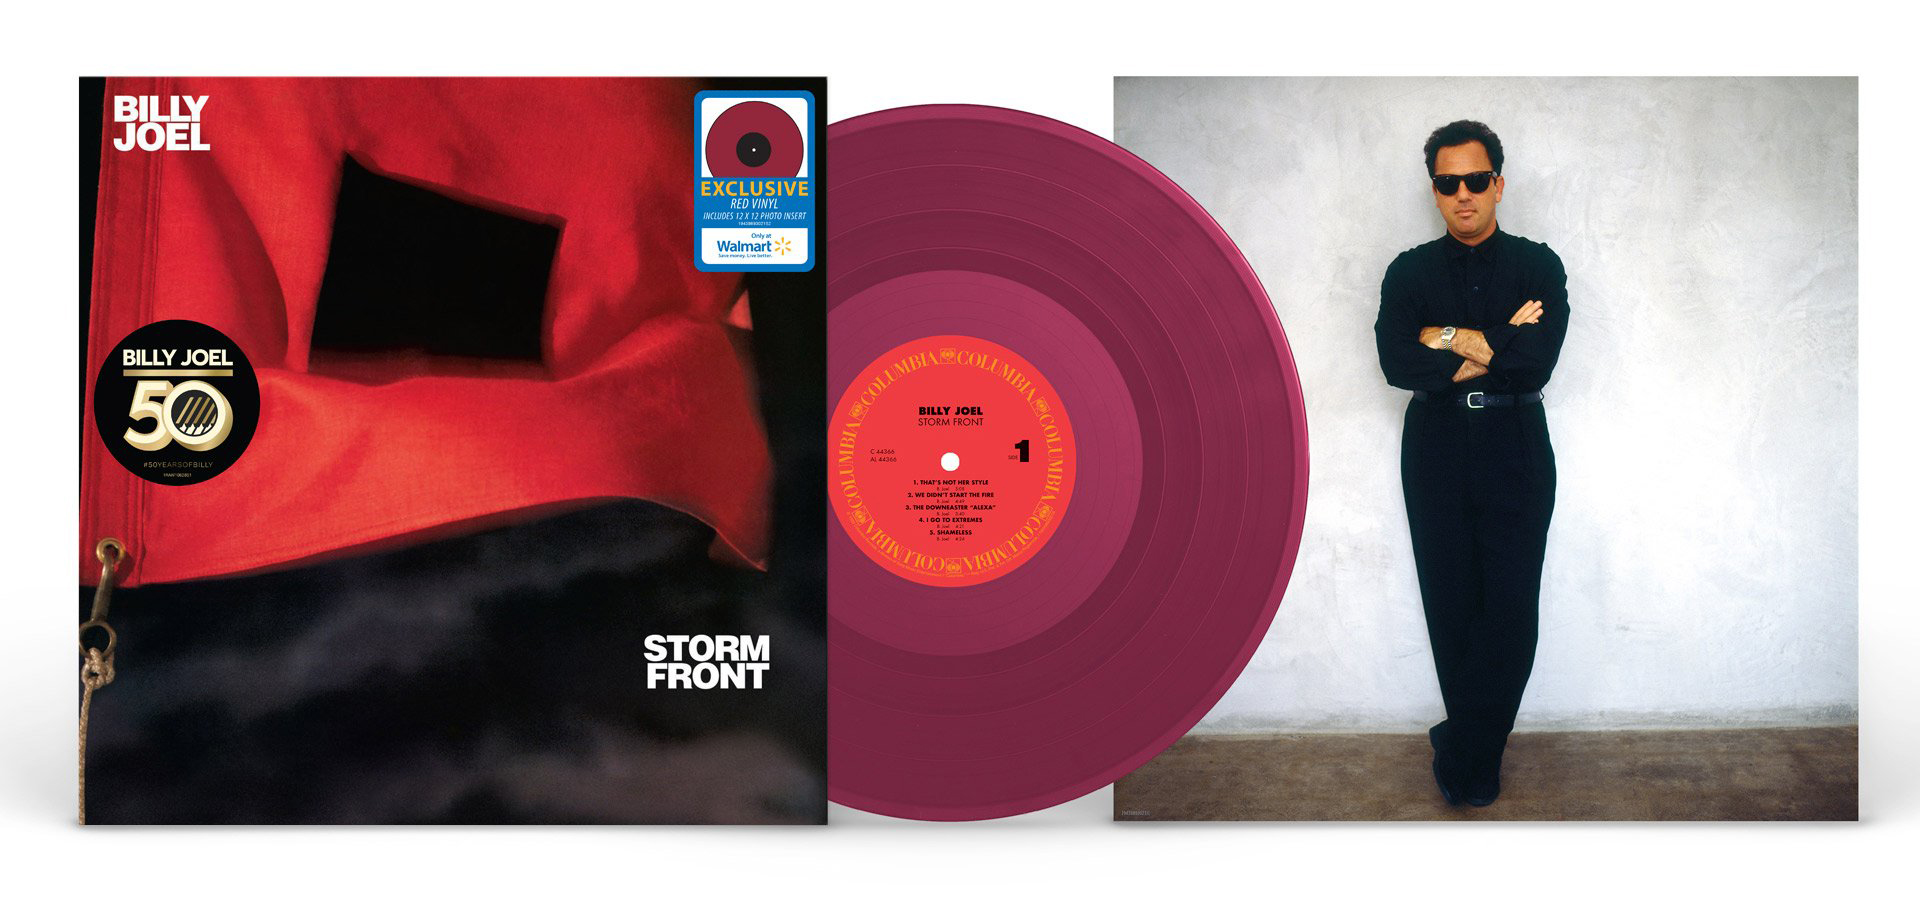 Billy Joel's 1989 album "Storm Front" on red vinyl from Walmart